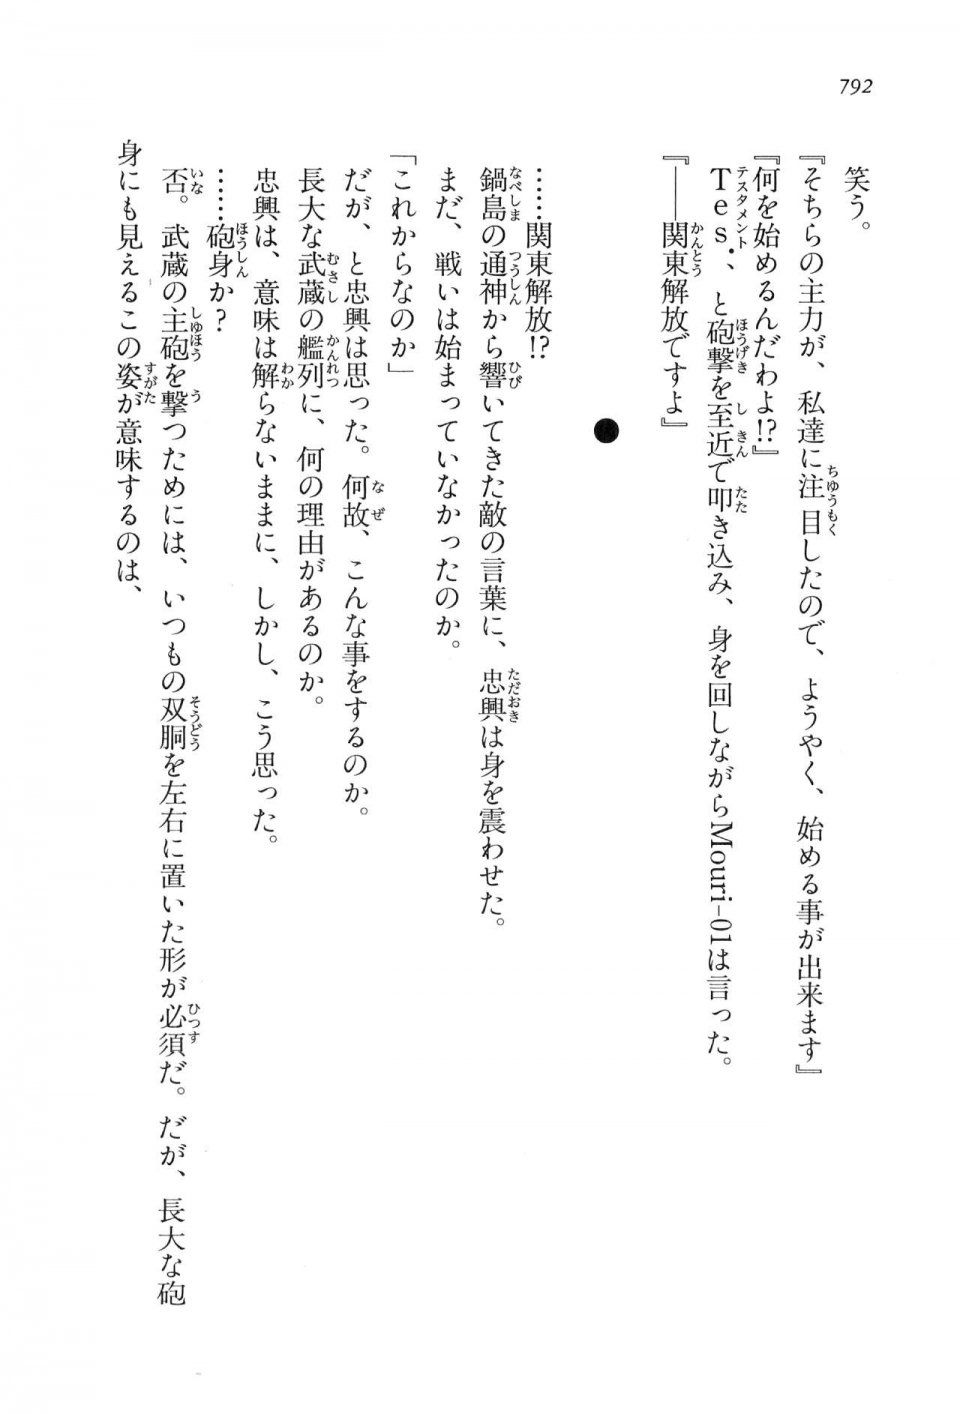 Kyoukai Senjou no Horizon LN Vol 16(7A) - Photo #792